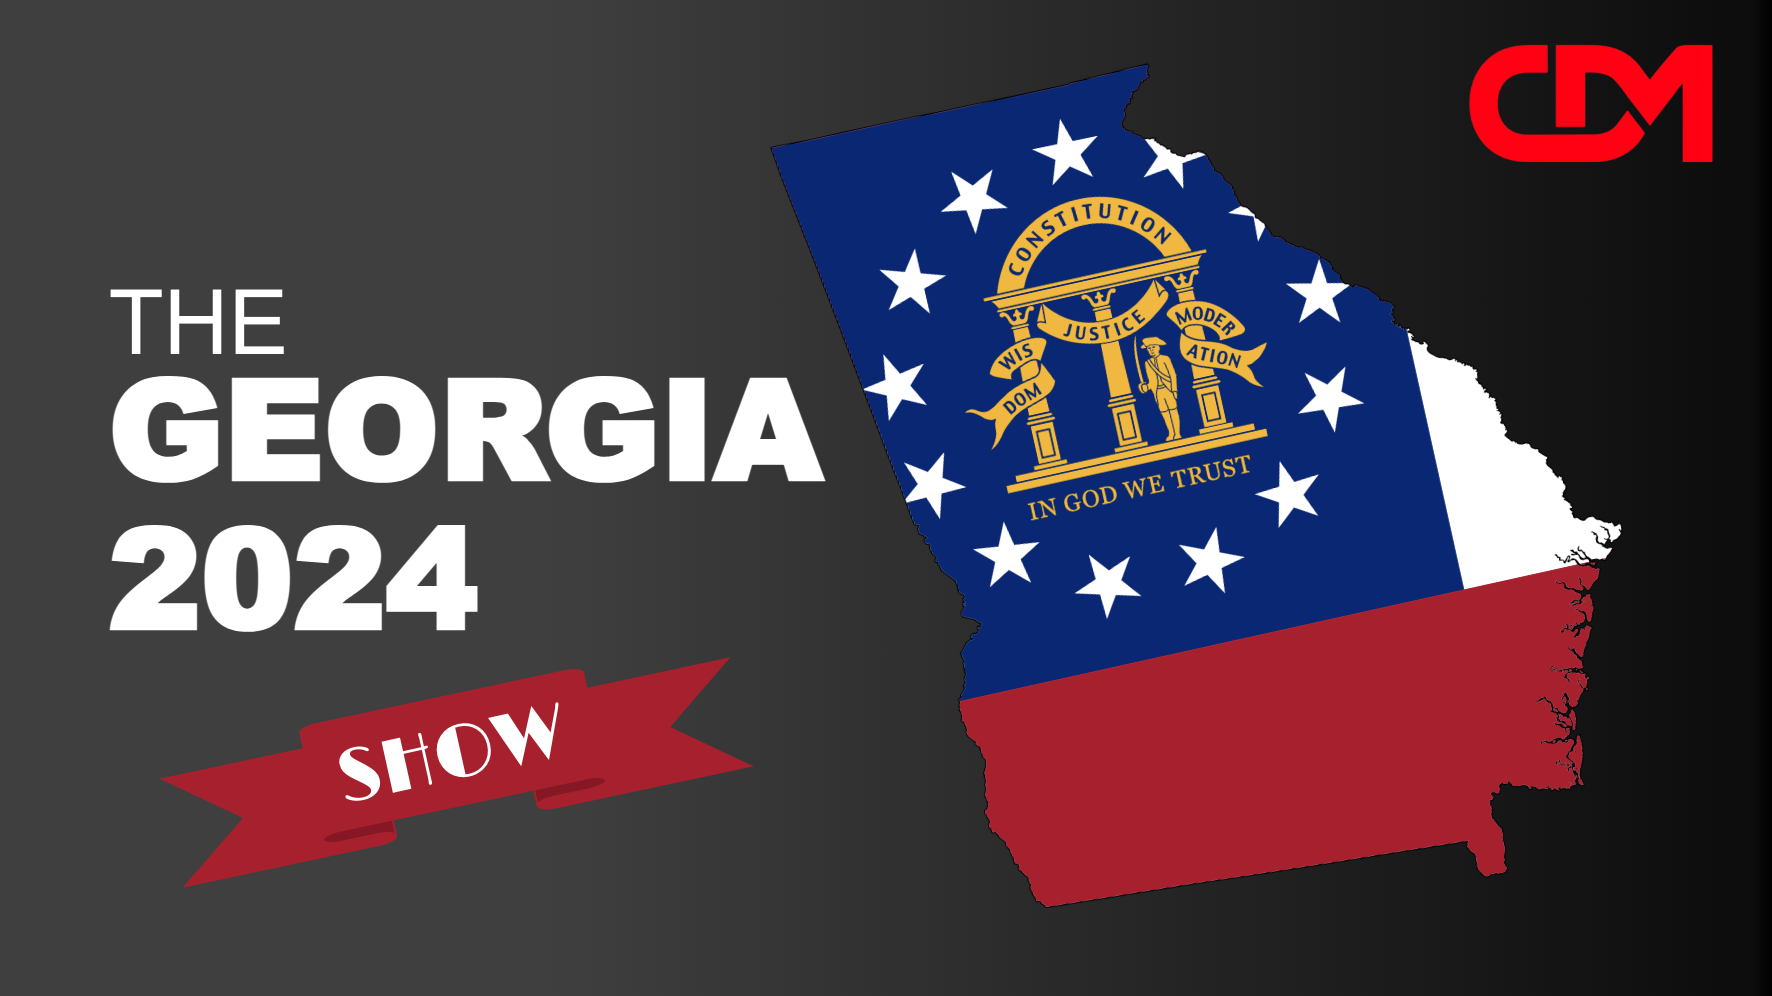 LIVE 2pm EST: The Georgia 2024 Show 2 Hour Special! Ukraine, Iran, Fair Georgia Elections?